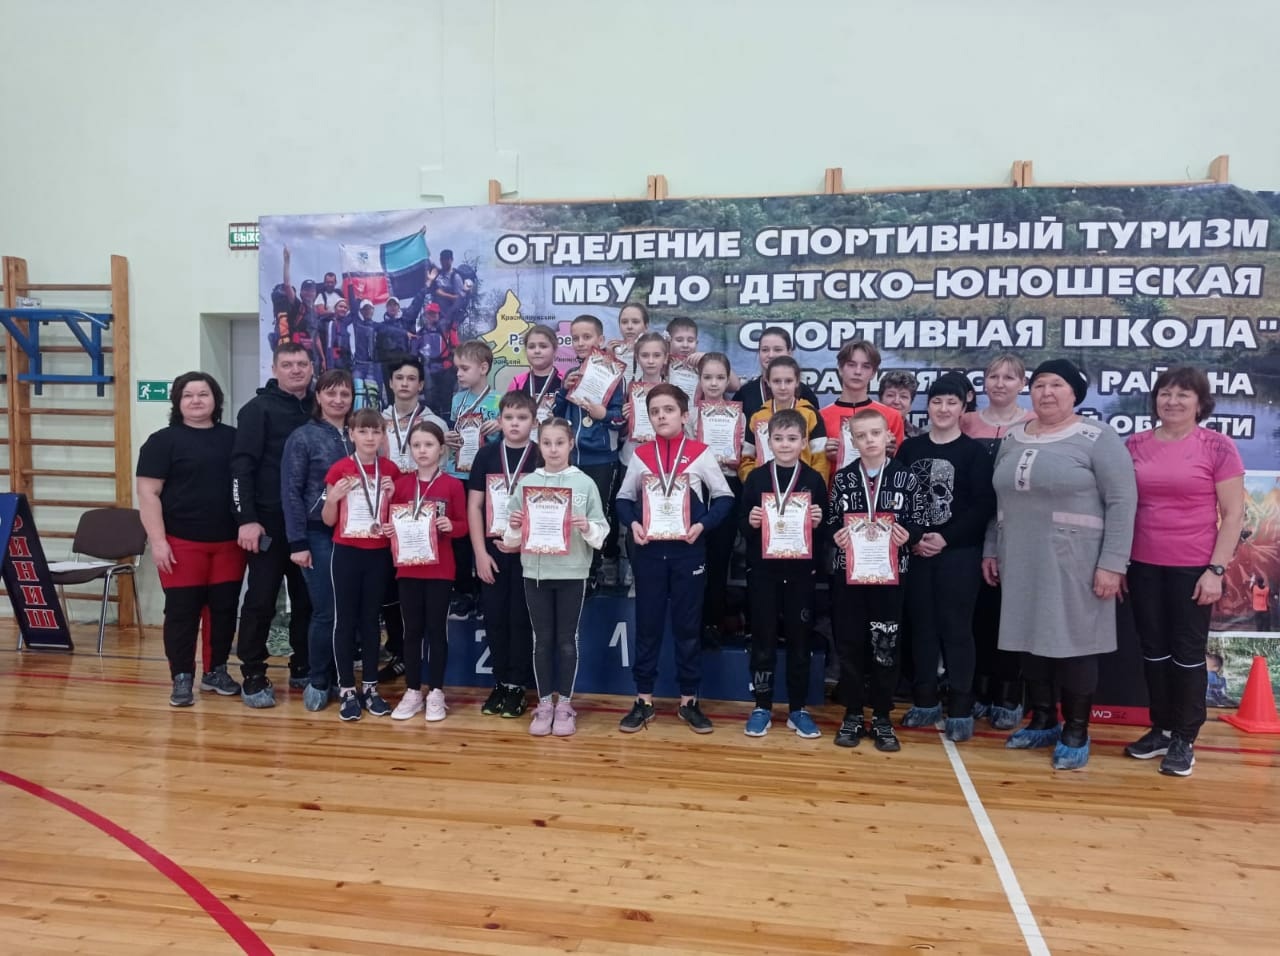 Впервые состоялось первенство спортивной школы Ракитянского района по спортивному ориентированию в закрытых помещениях